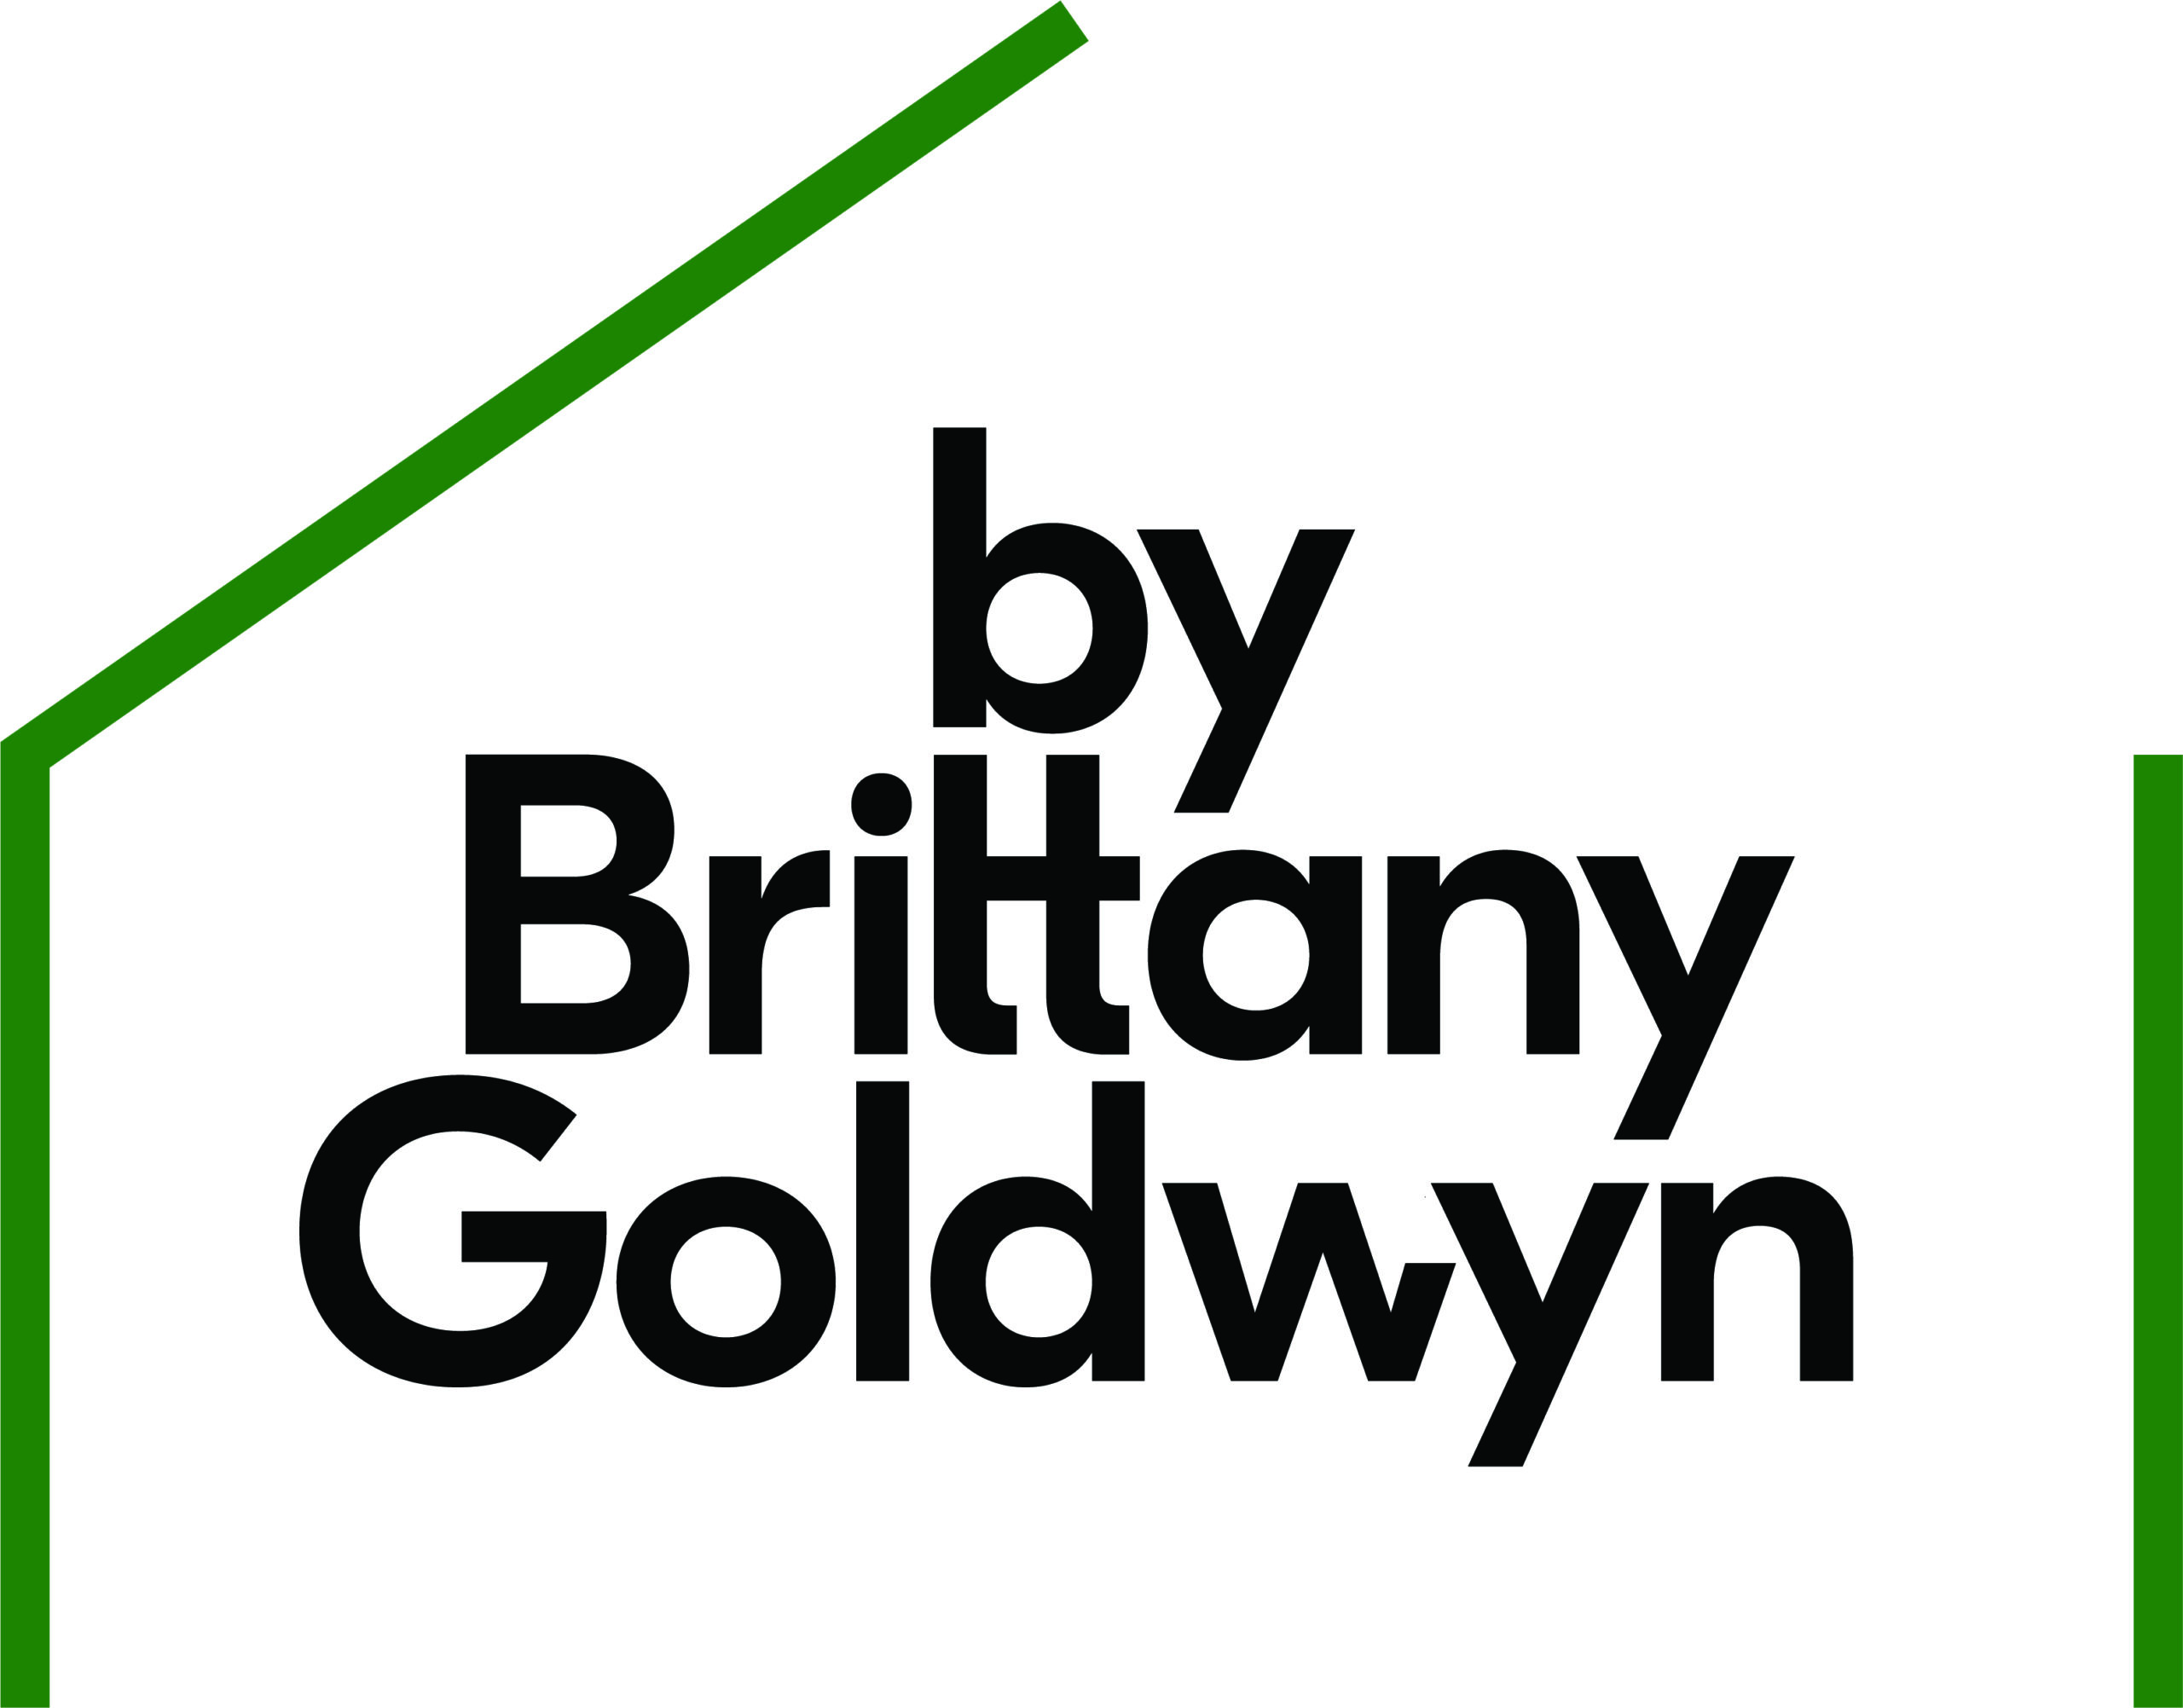 by brittany goldwyn logo